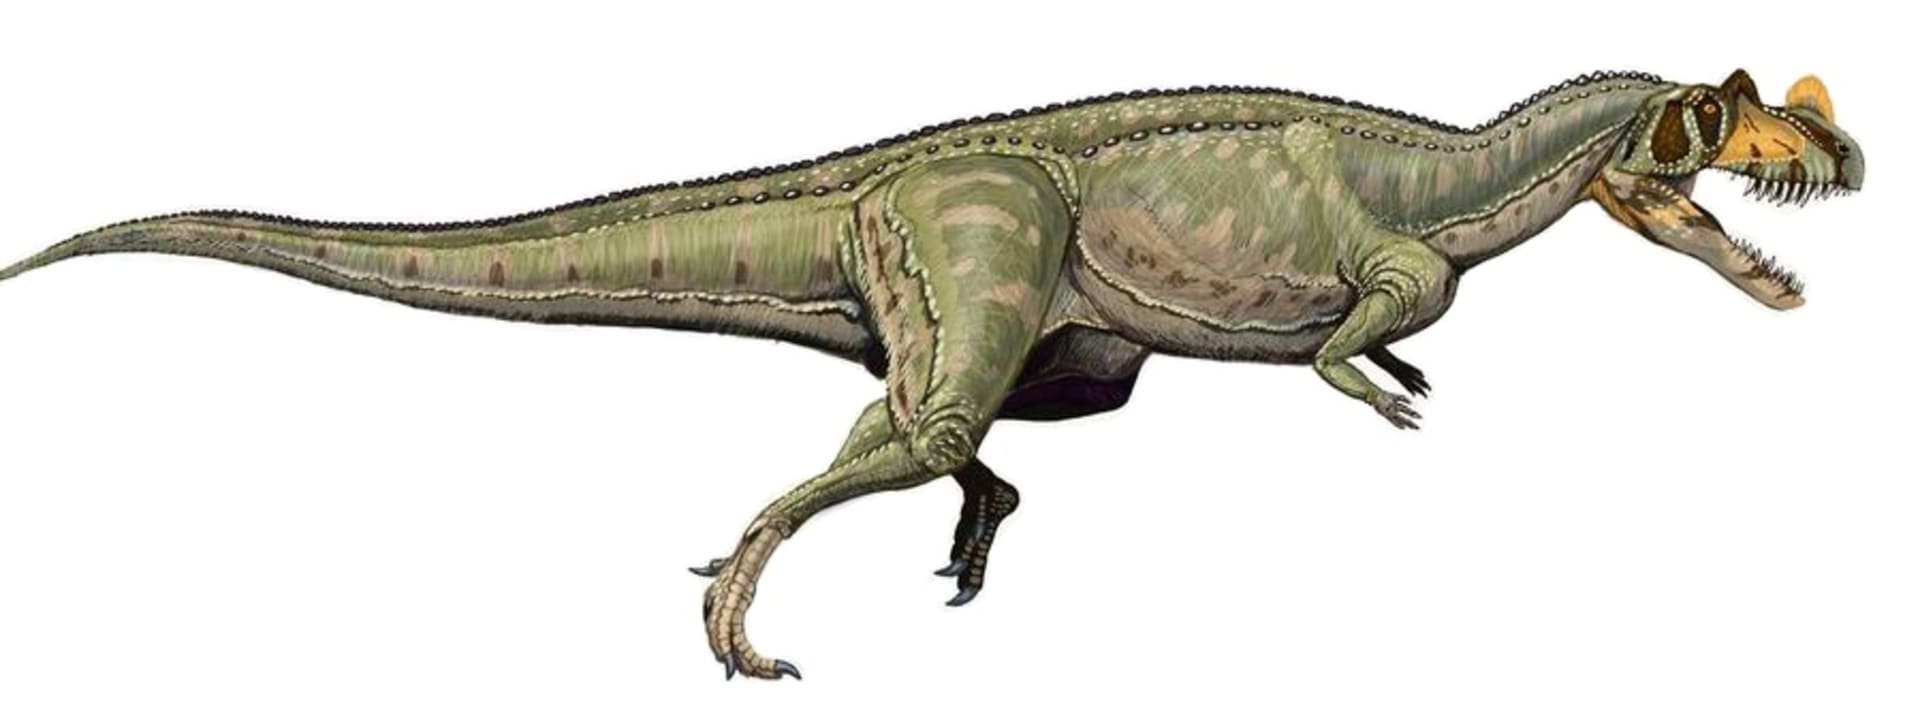 dinosaurus ze skupiny terapodů Ceratosaurus nasicornis - příbuzný nově objevenému druhu